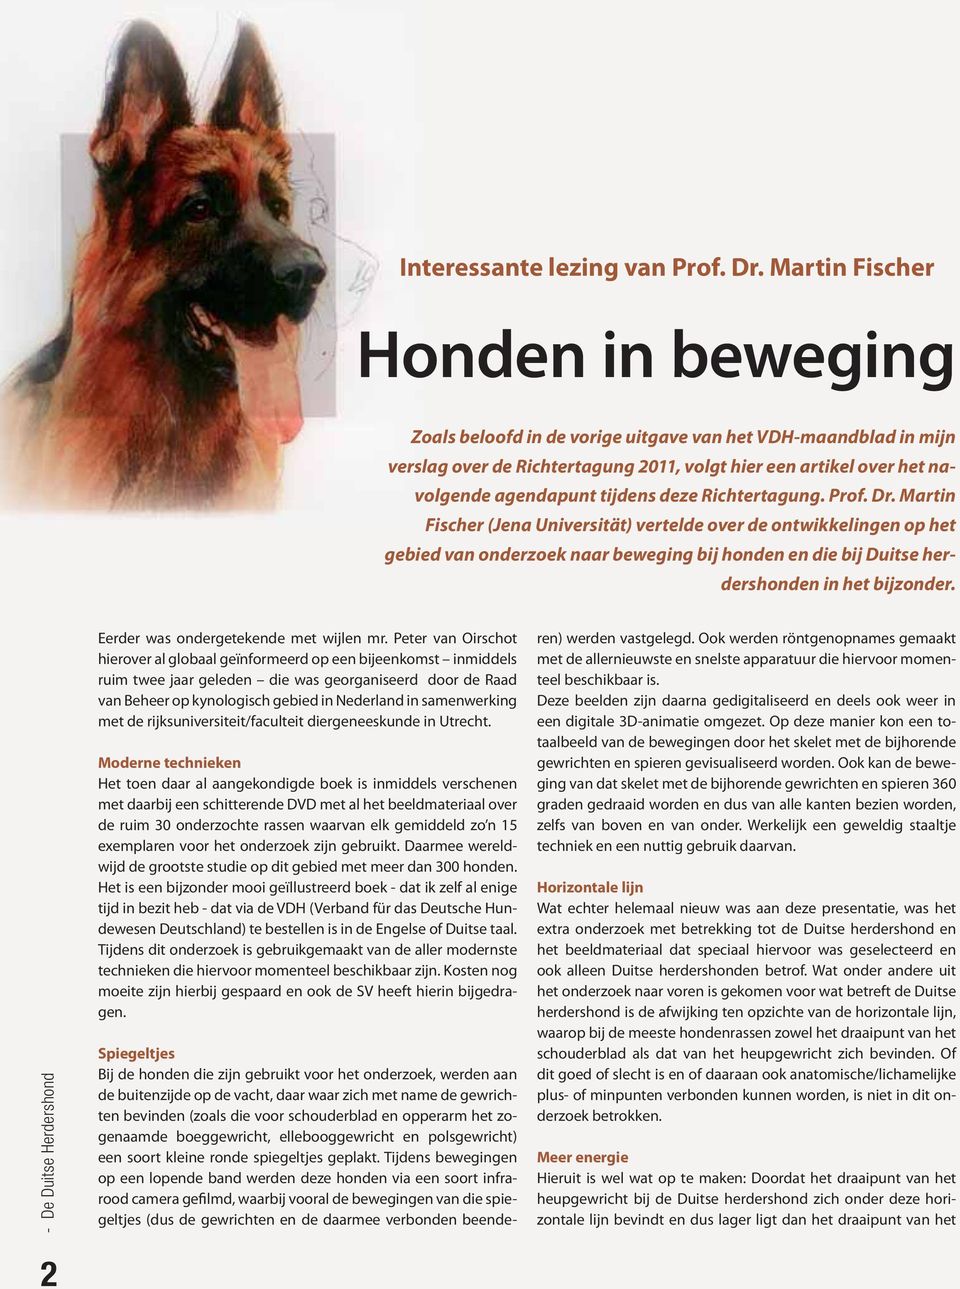 deze Richtertagung. Prof. Dr. Martin Fischer (Jena Universität) vertelde over de ontwikkelingen op het gebied van onderzoek naar beweging bij honden en die bij Duitse herdershonden in het bijzonder.